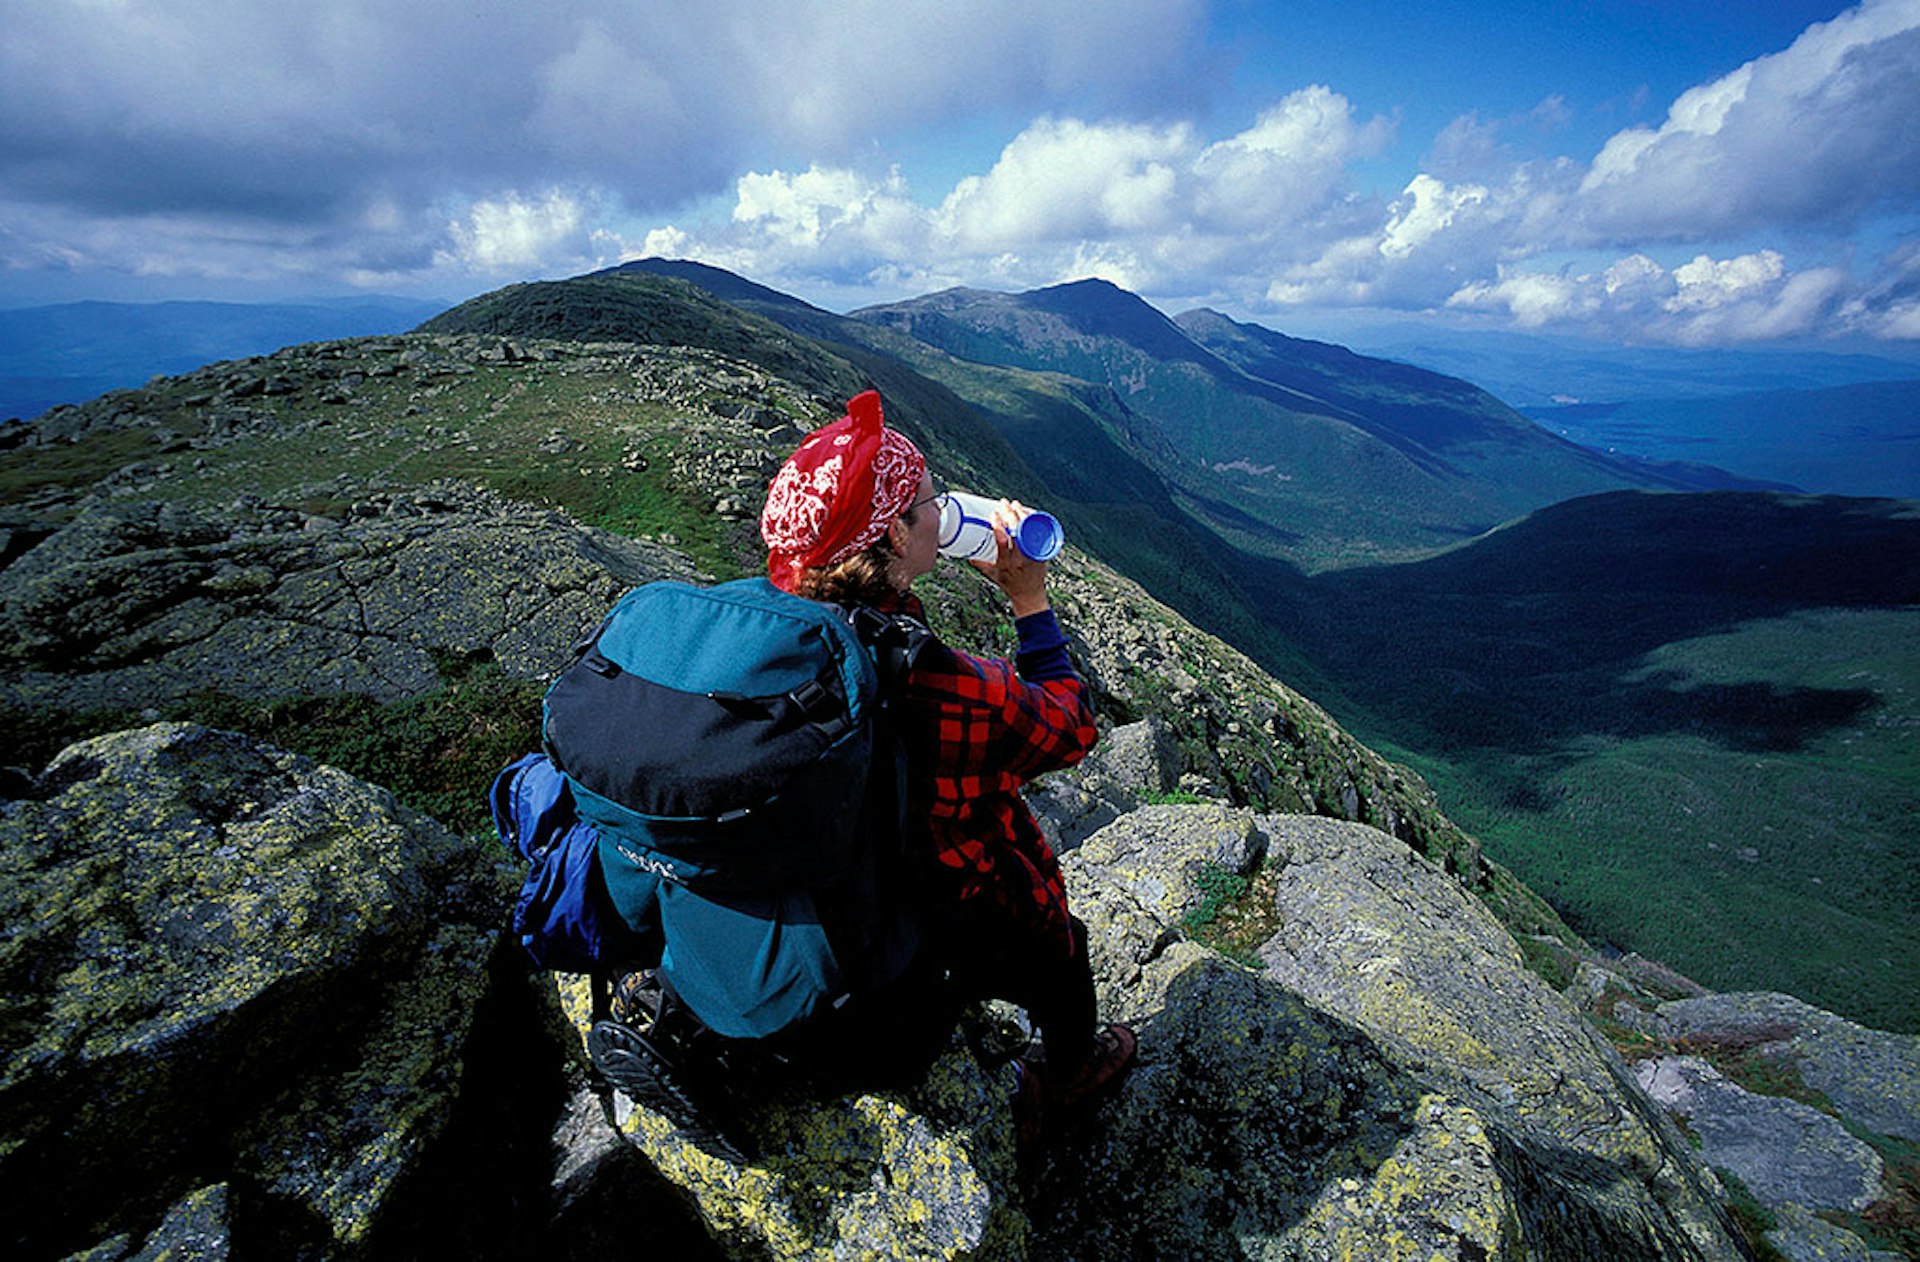 Hiker on Mount Washington. Image courtesy of Jerry Monkman.